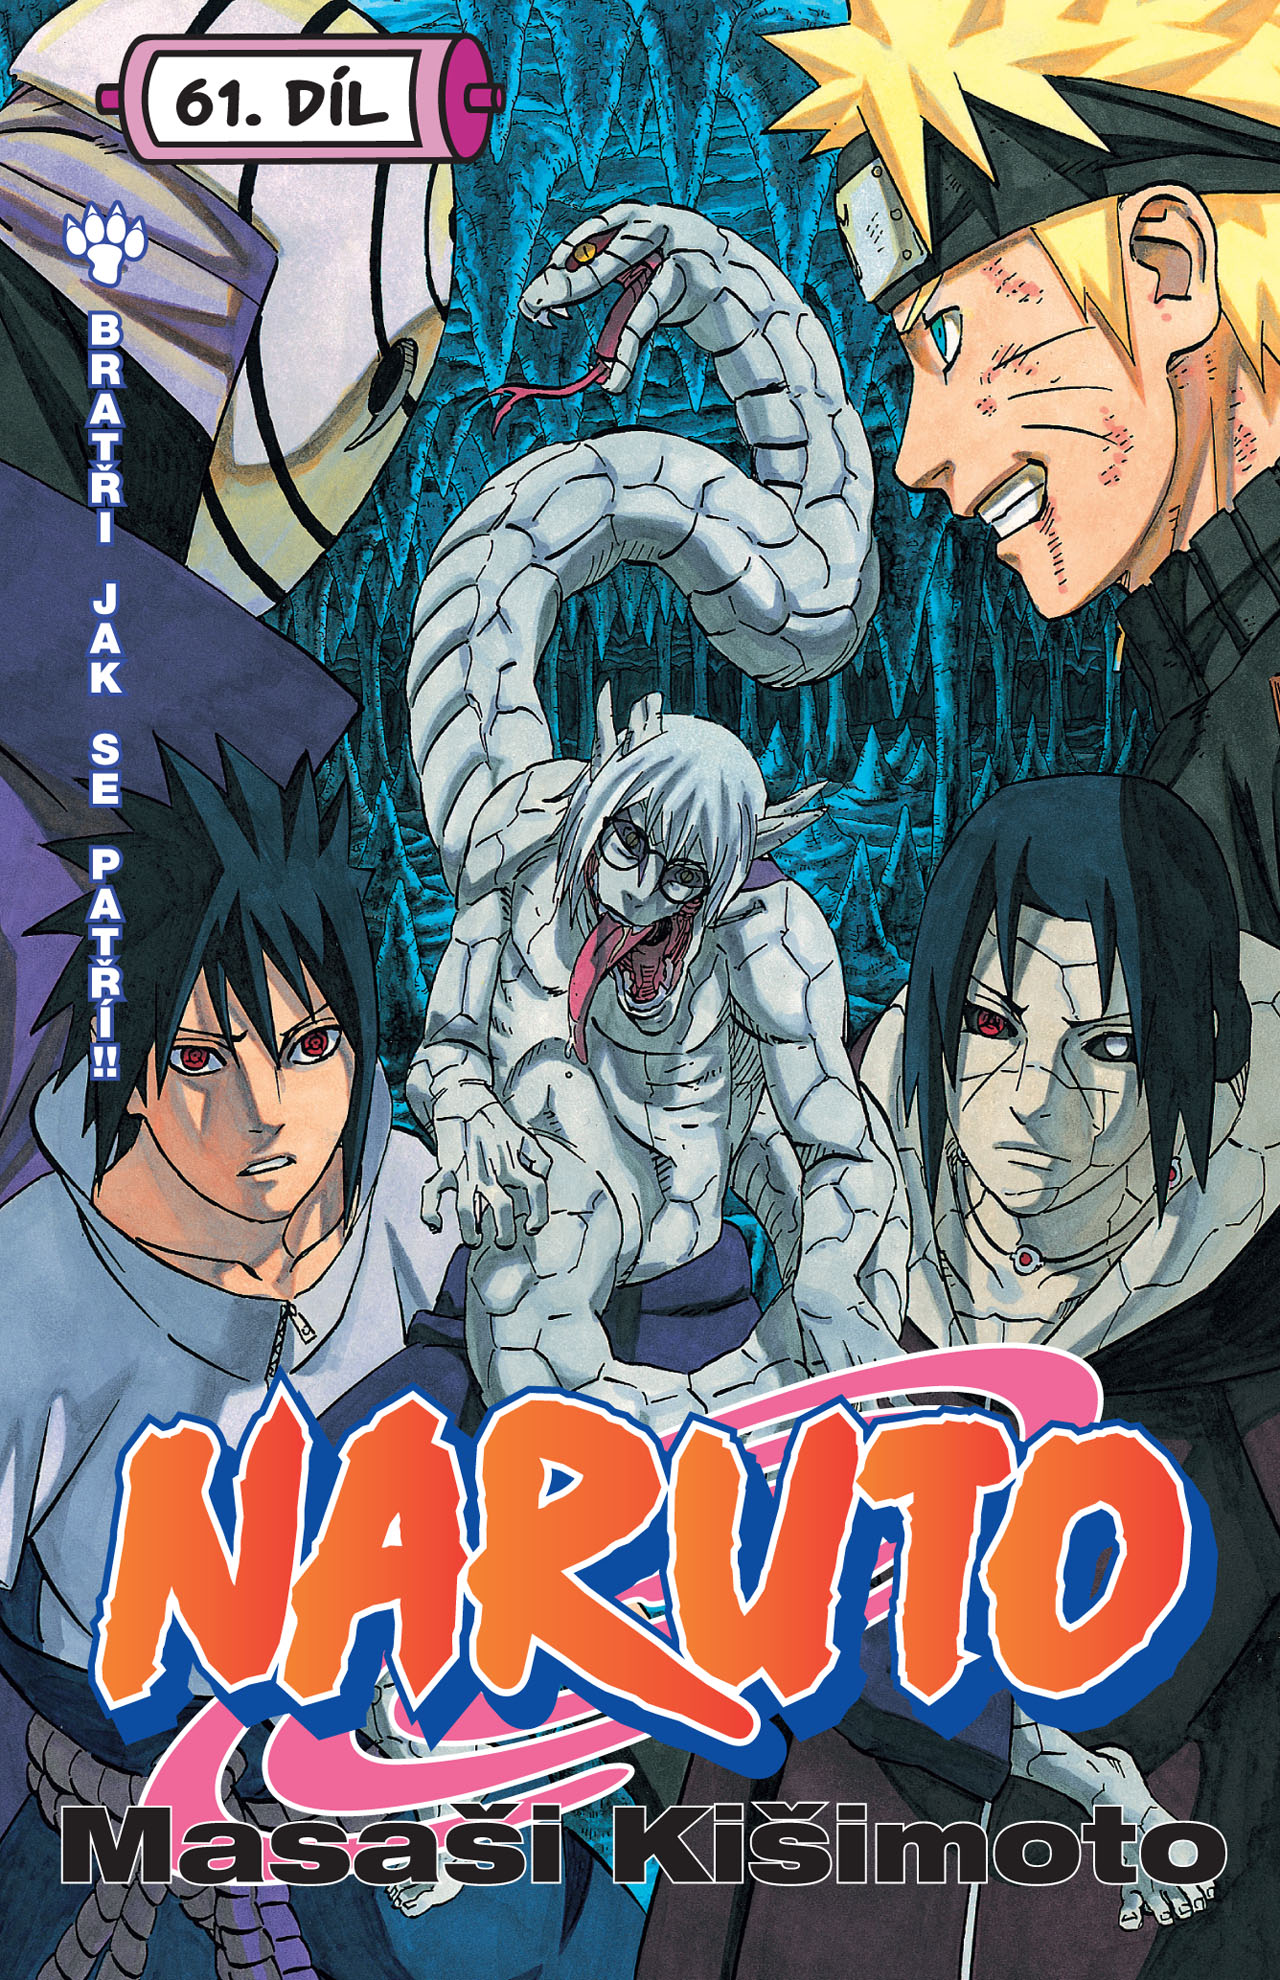 obrázek k novince - Naruto 61: Bratři jak se patří